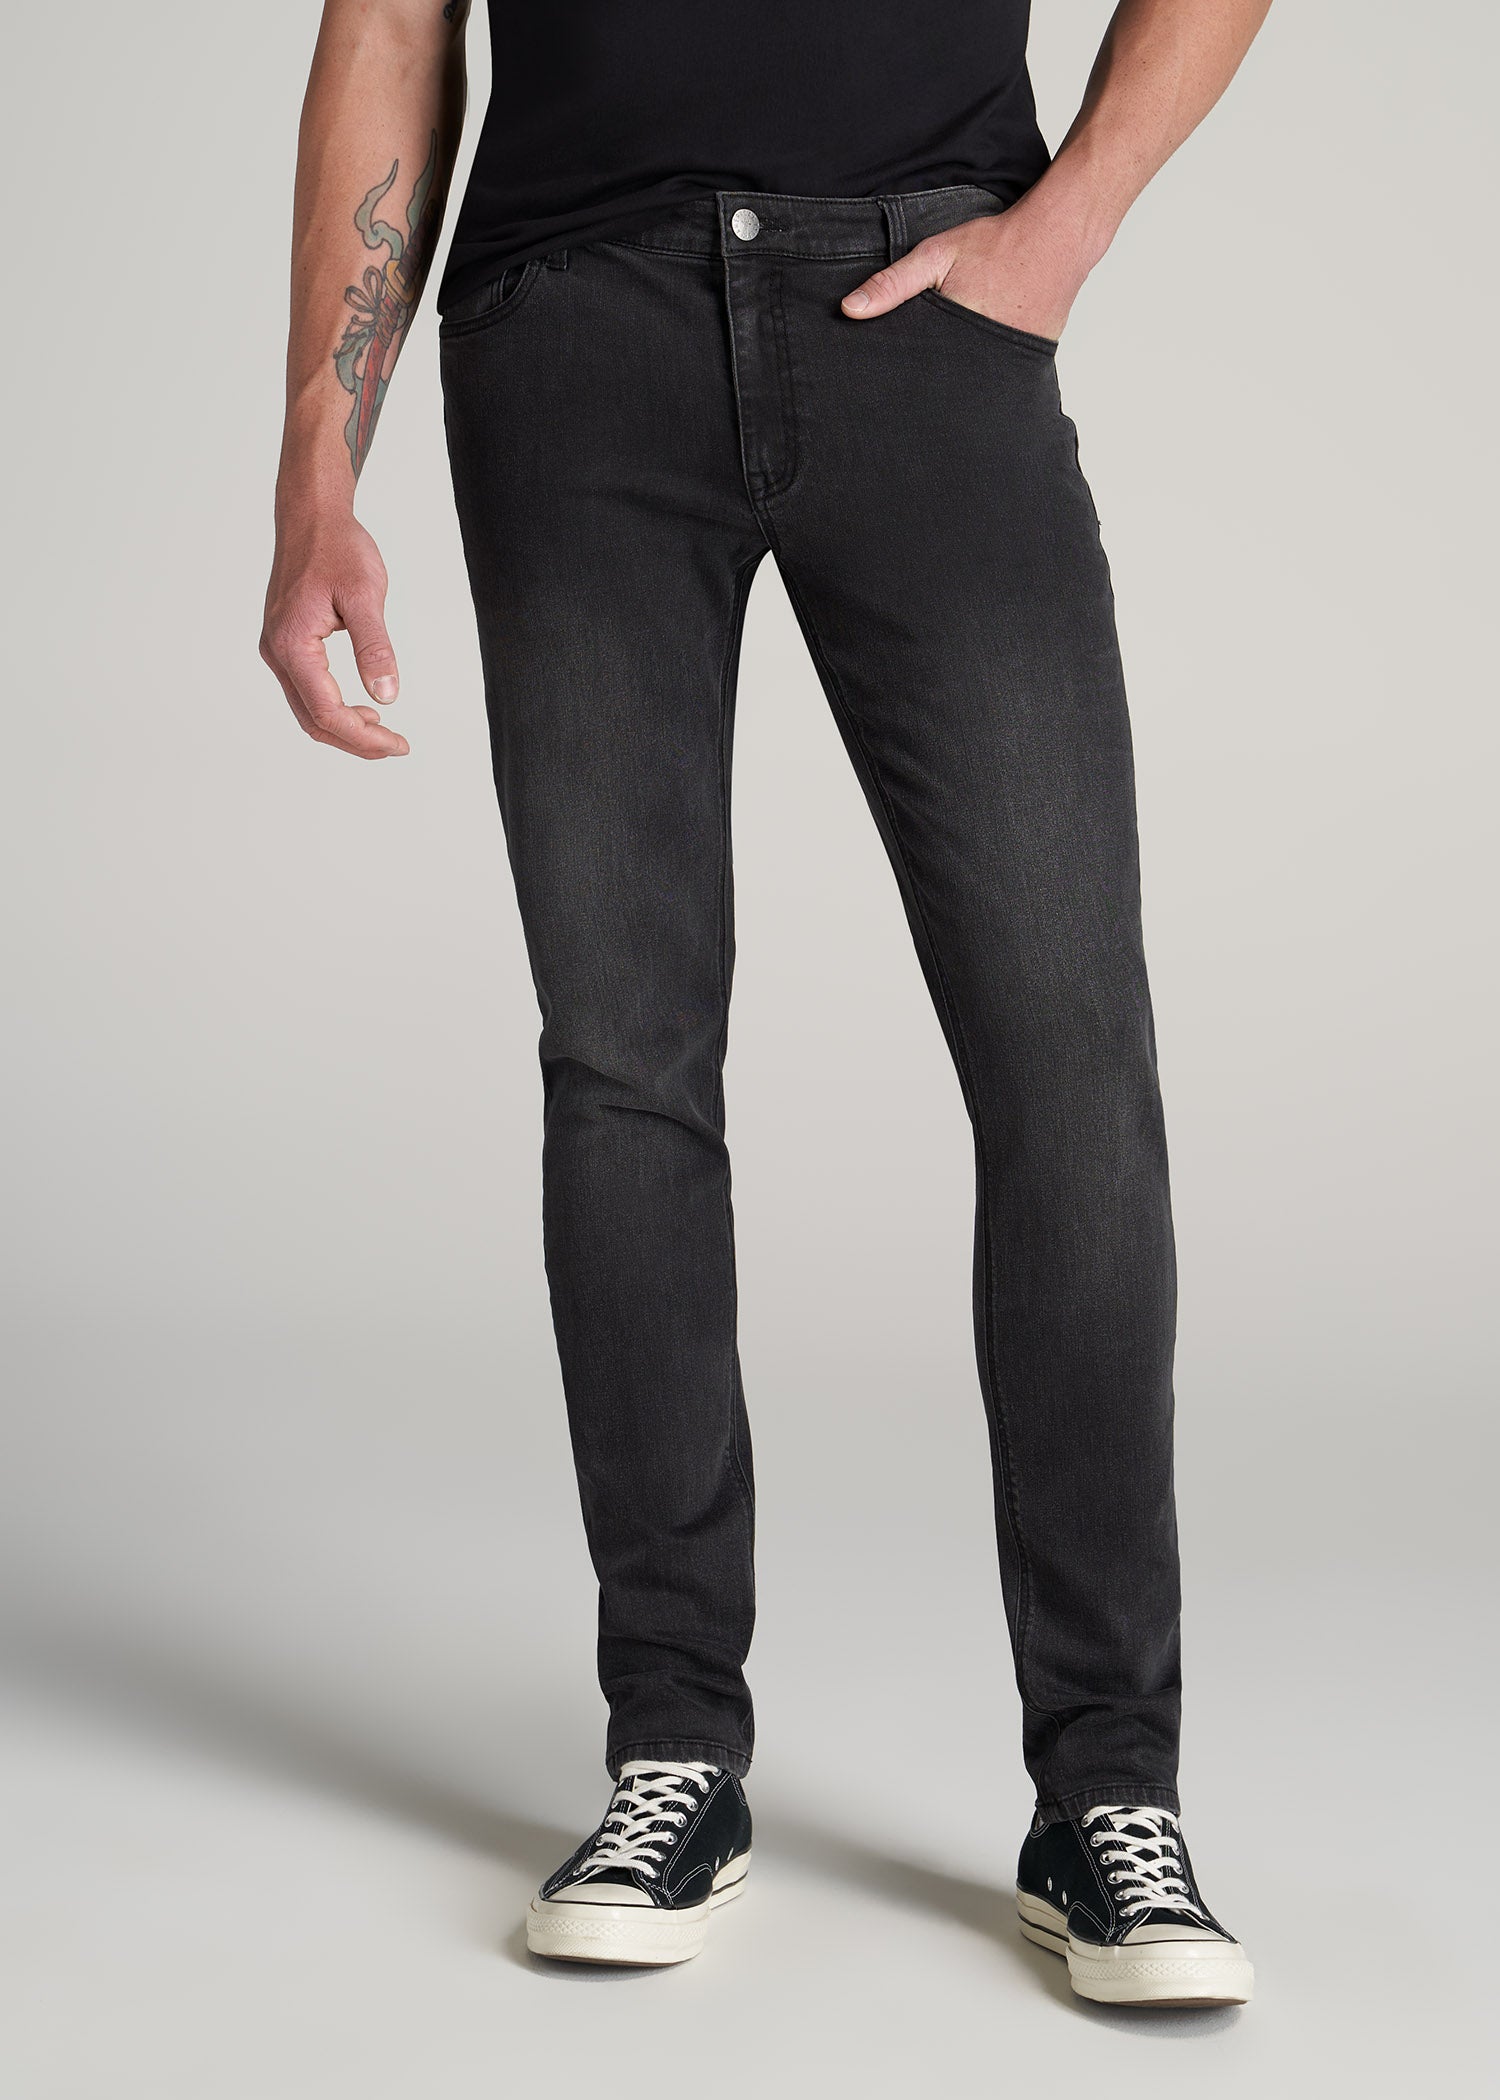 Men's Tall Skinny Jeans Dark | Tall